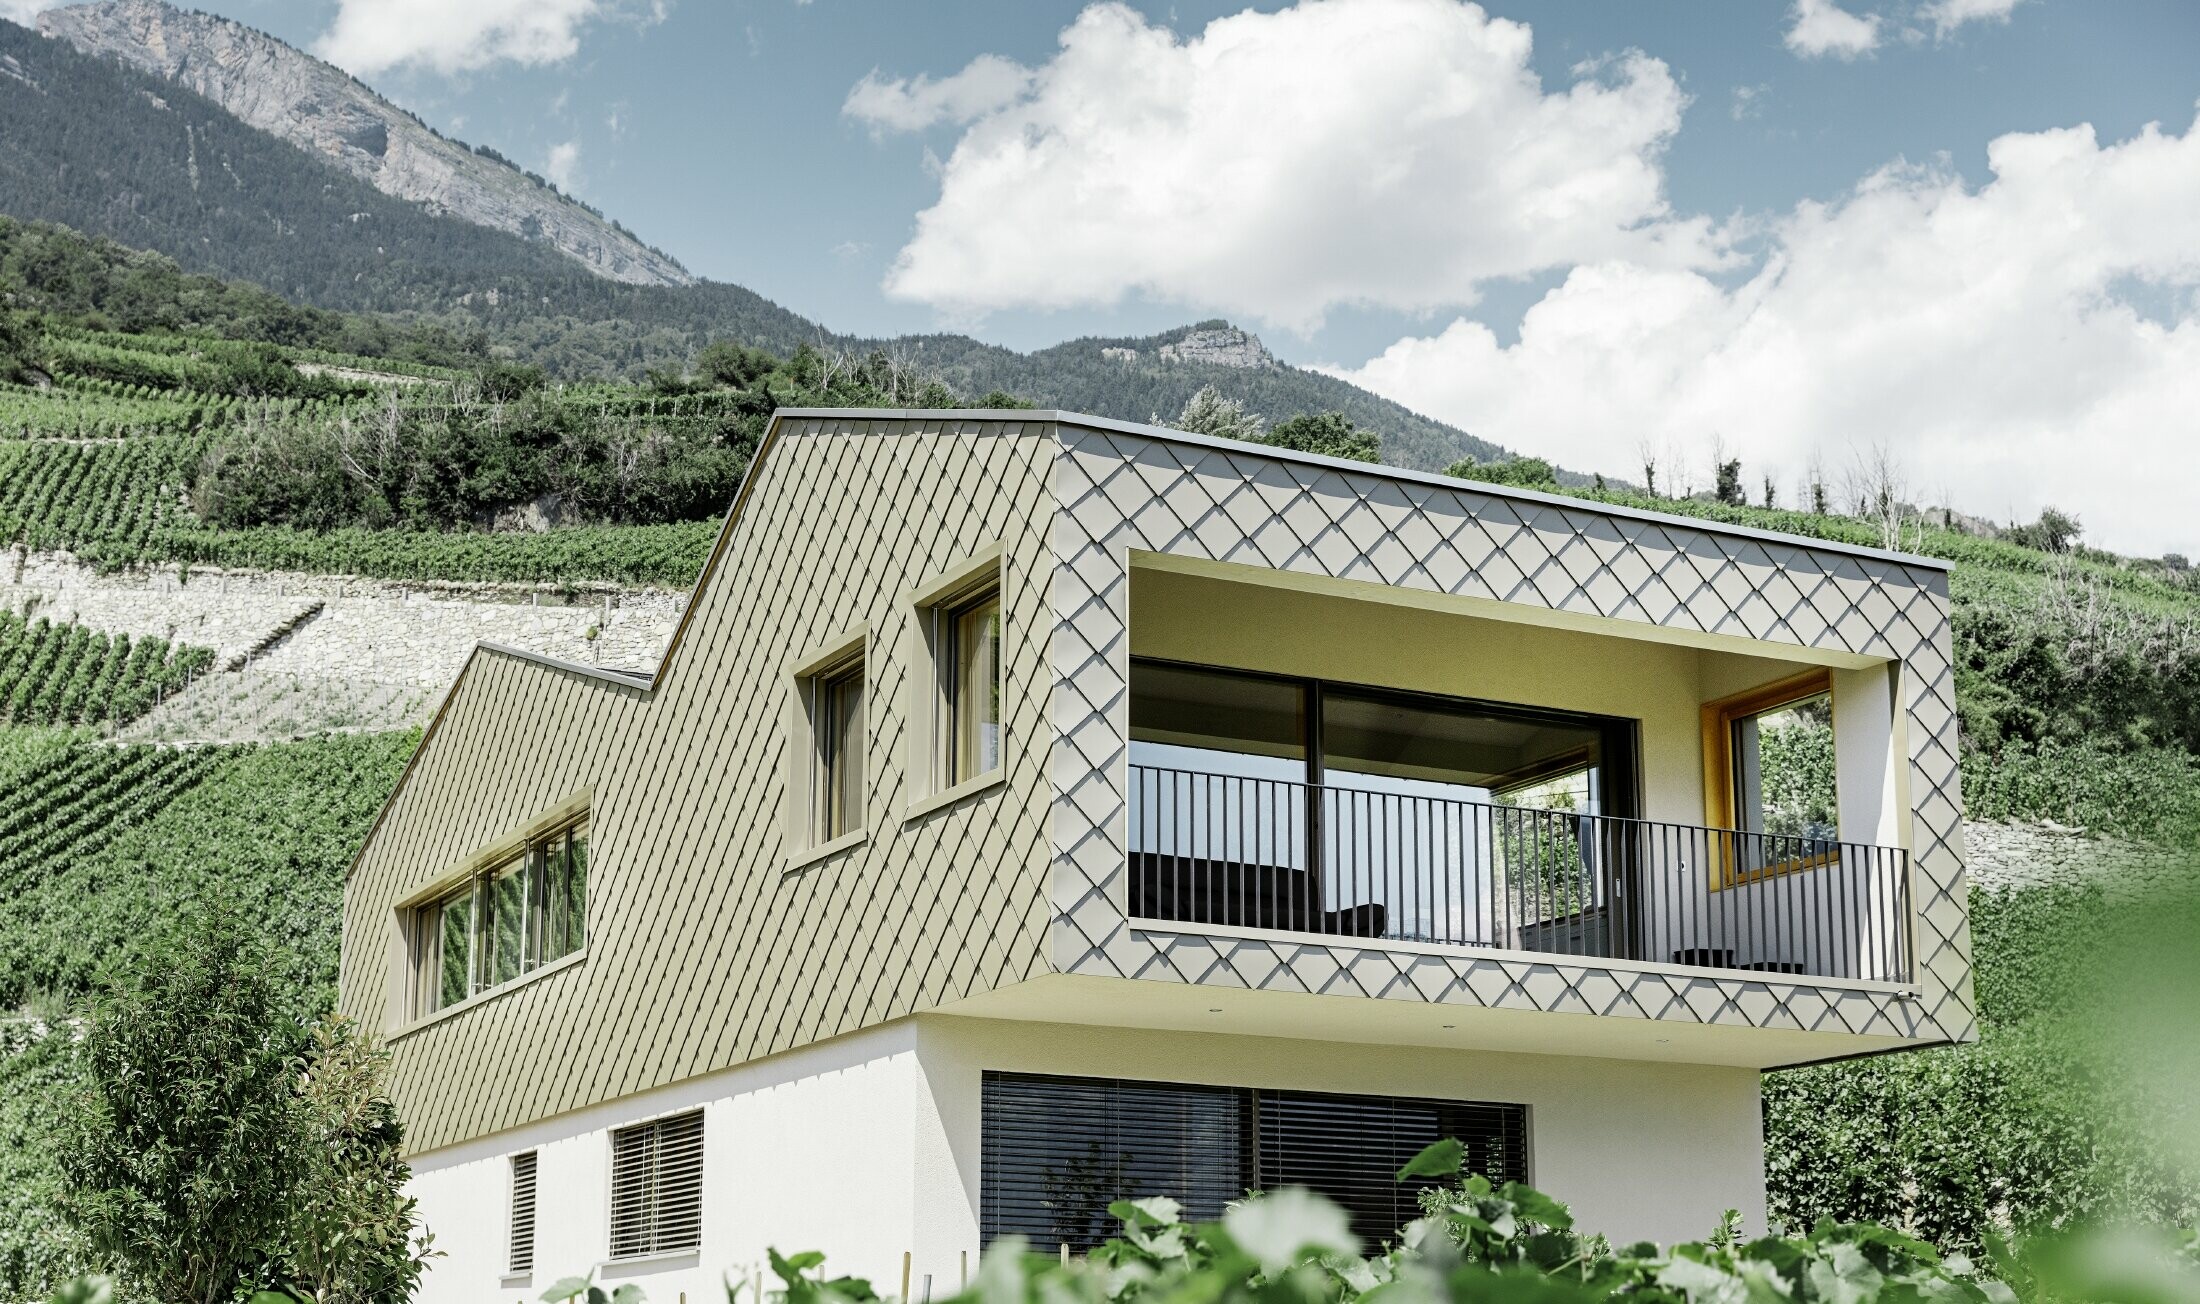 Casa unifamiliare moderna in mezzo ai vigneti della valle Rhône con 4 superfici di copertura differenti e un attico con una facciata in scaglia in bronzo